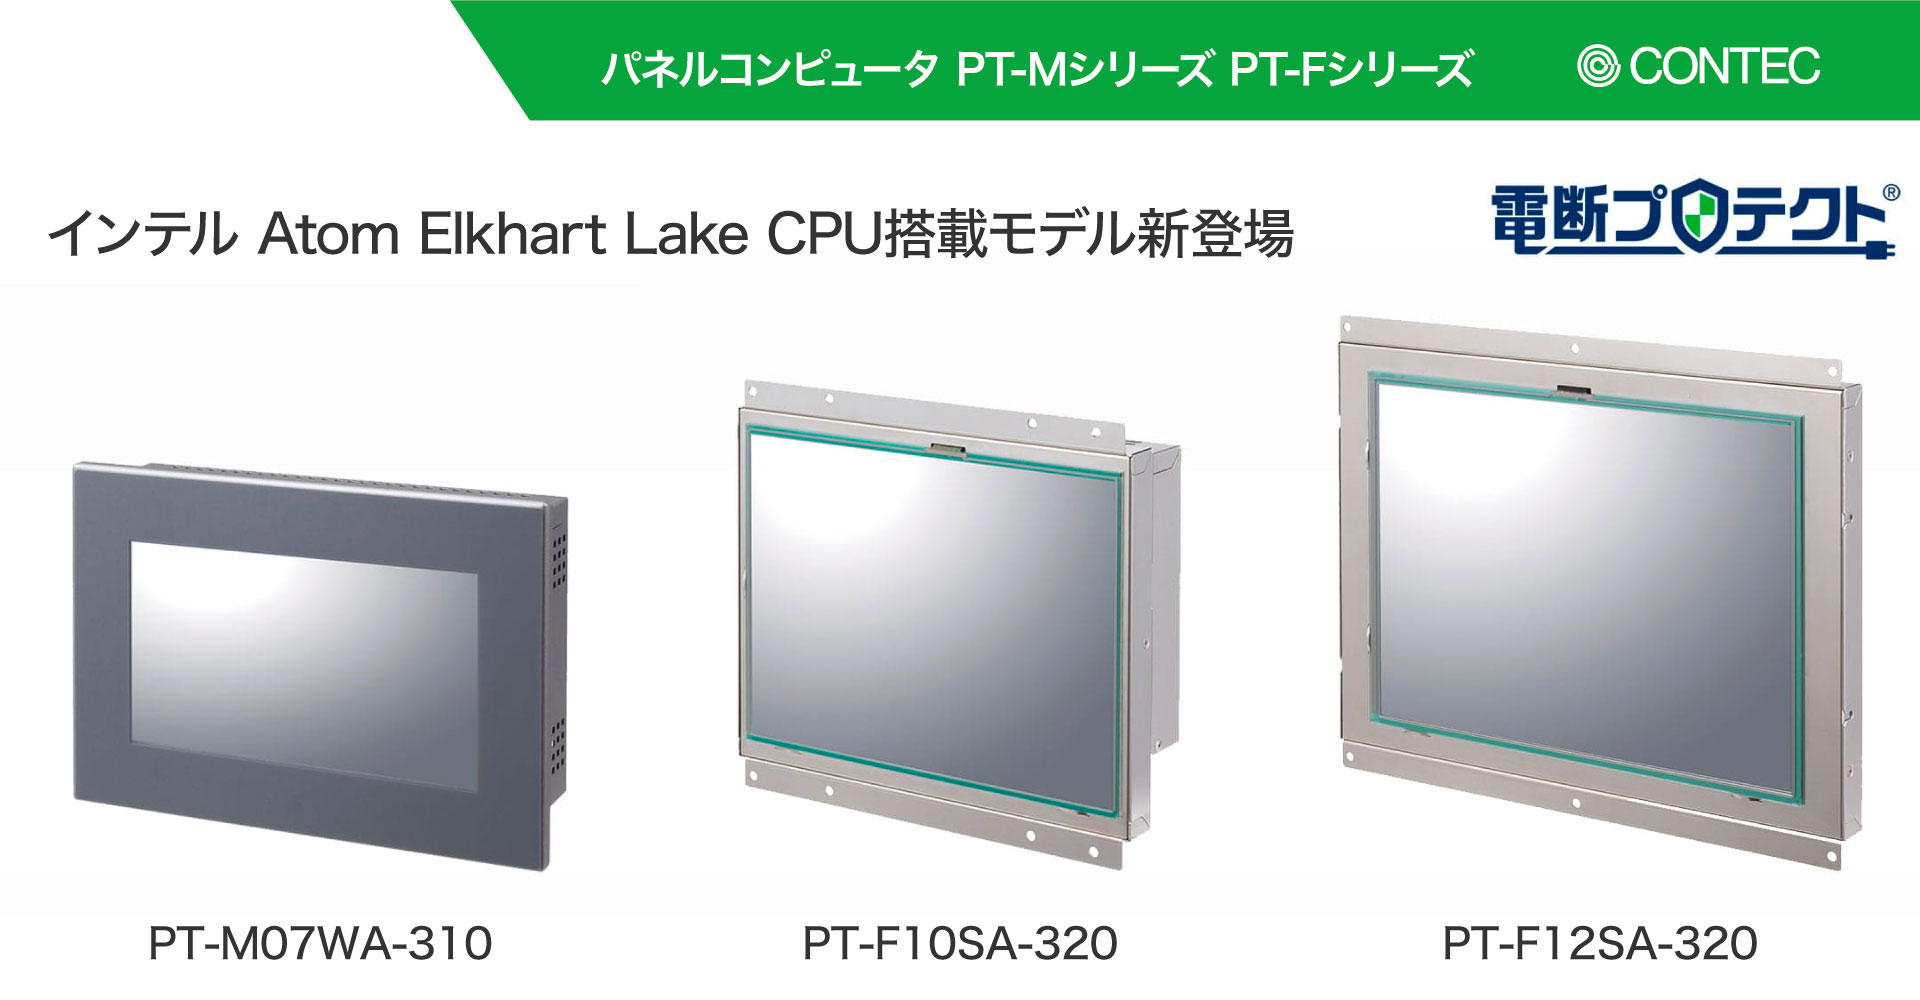 パネルコンピュータ「PT-Mシリーズ」「PT-Fシリーズ」にインテル Atom Elkhart Lake CPU搭載モデル新登場